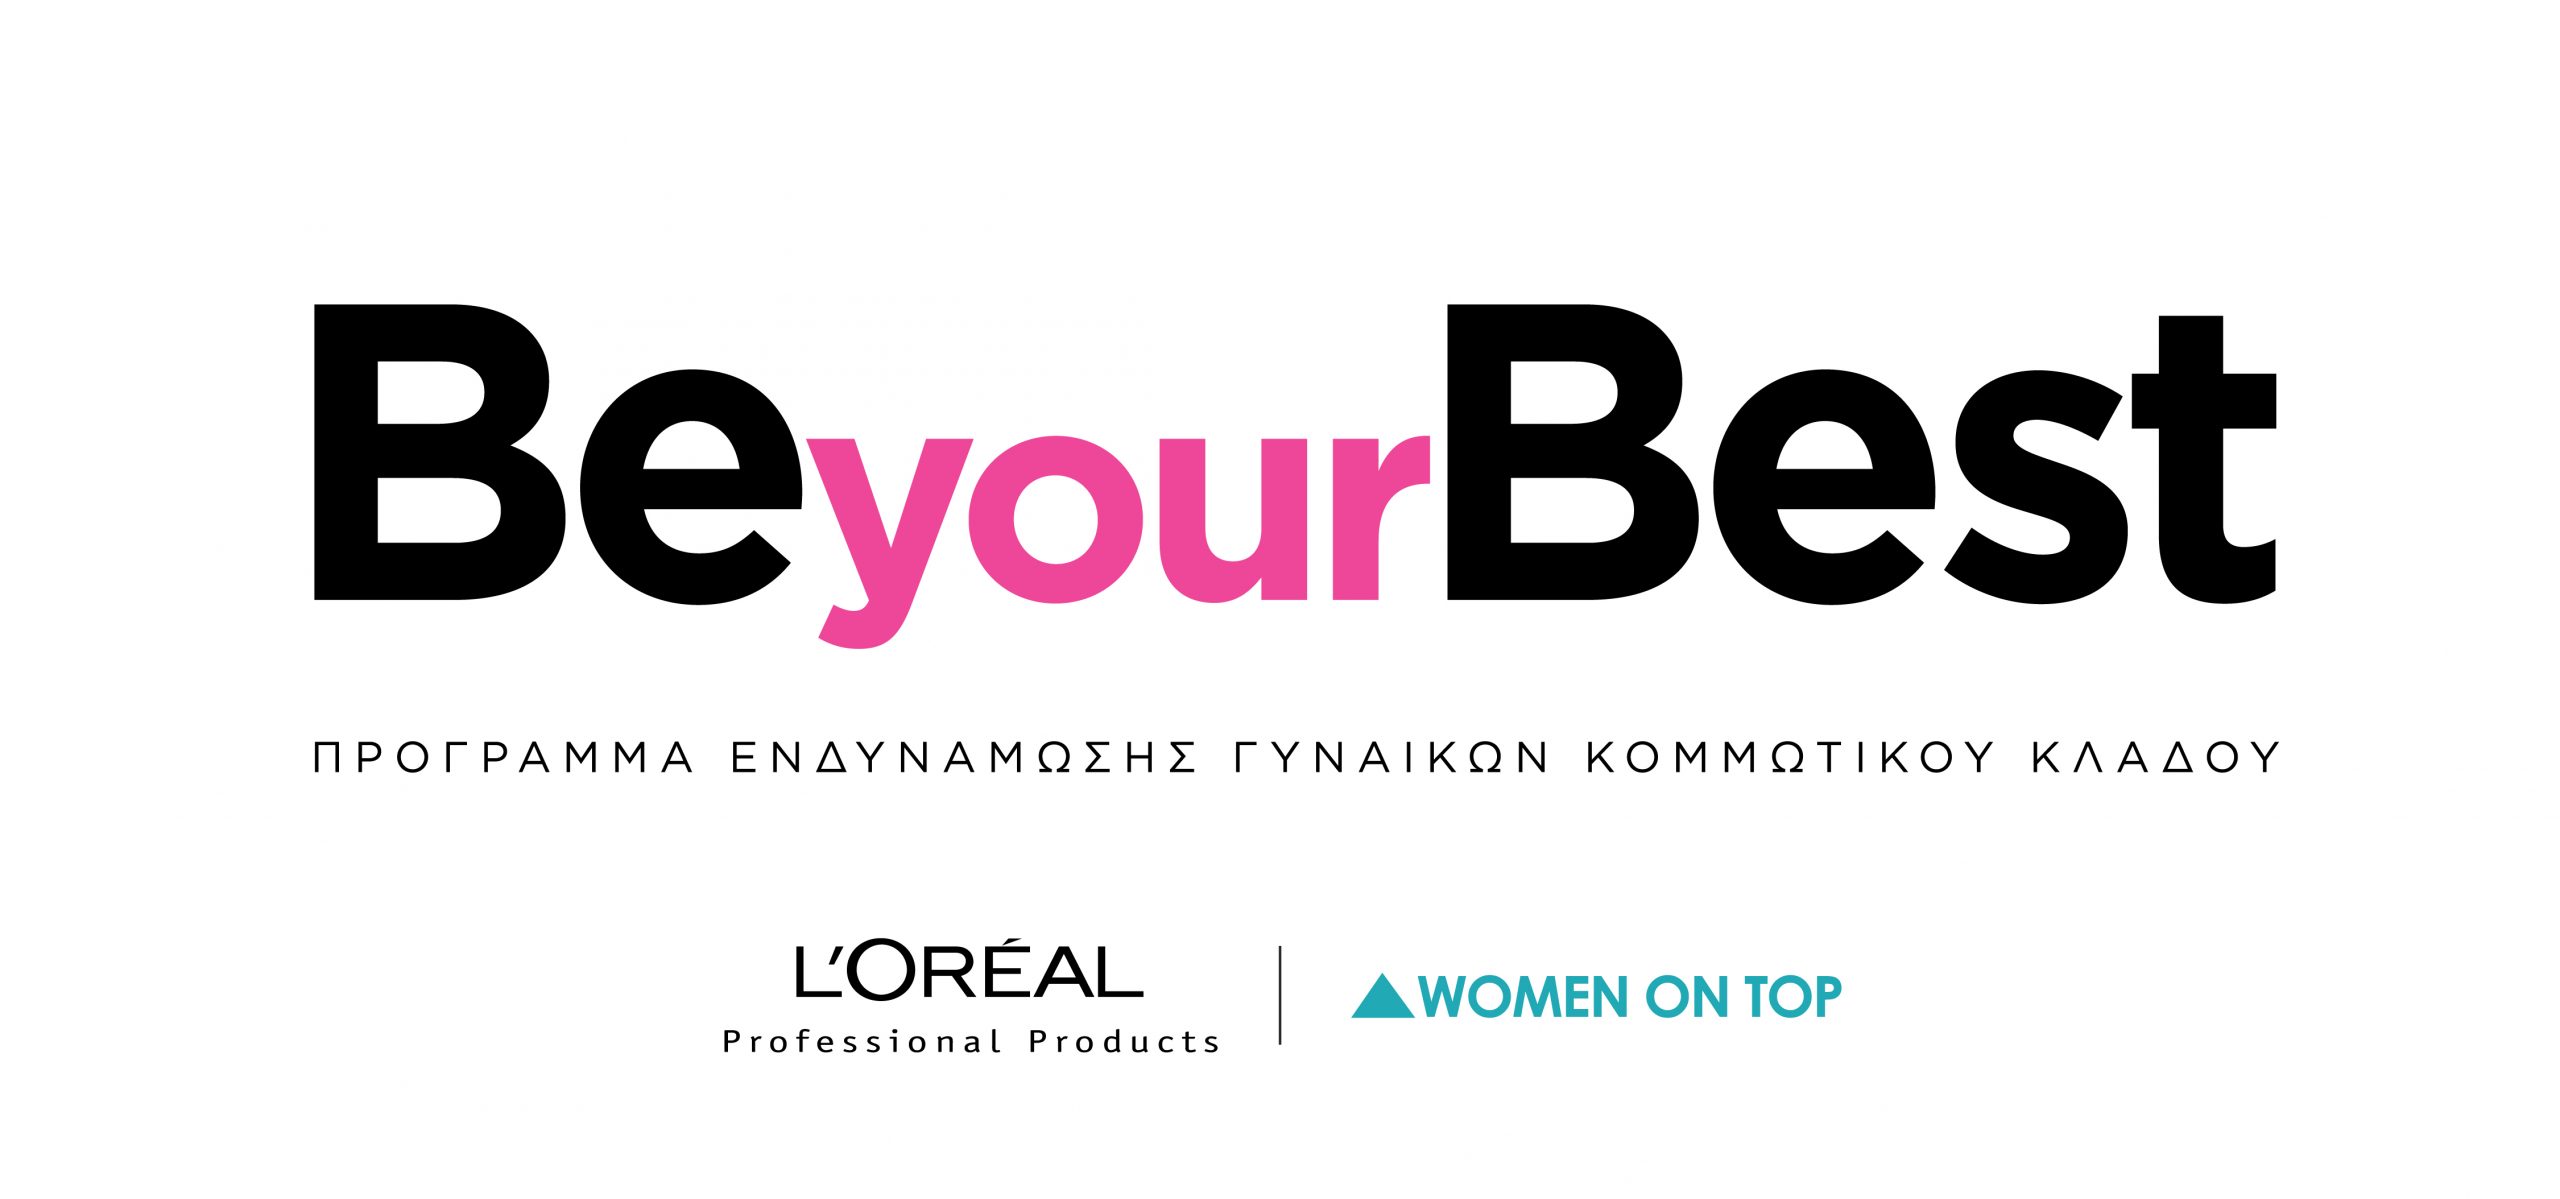 Η L’Oréal Professional Products εγκαινιάζει το νέο πρόγραμμα επιχειρηματικής ενδυνάμωσης γυναικών του κομμωτικού κλάδου